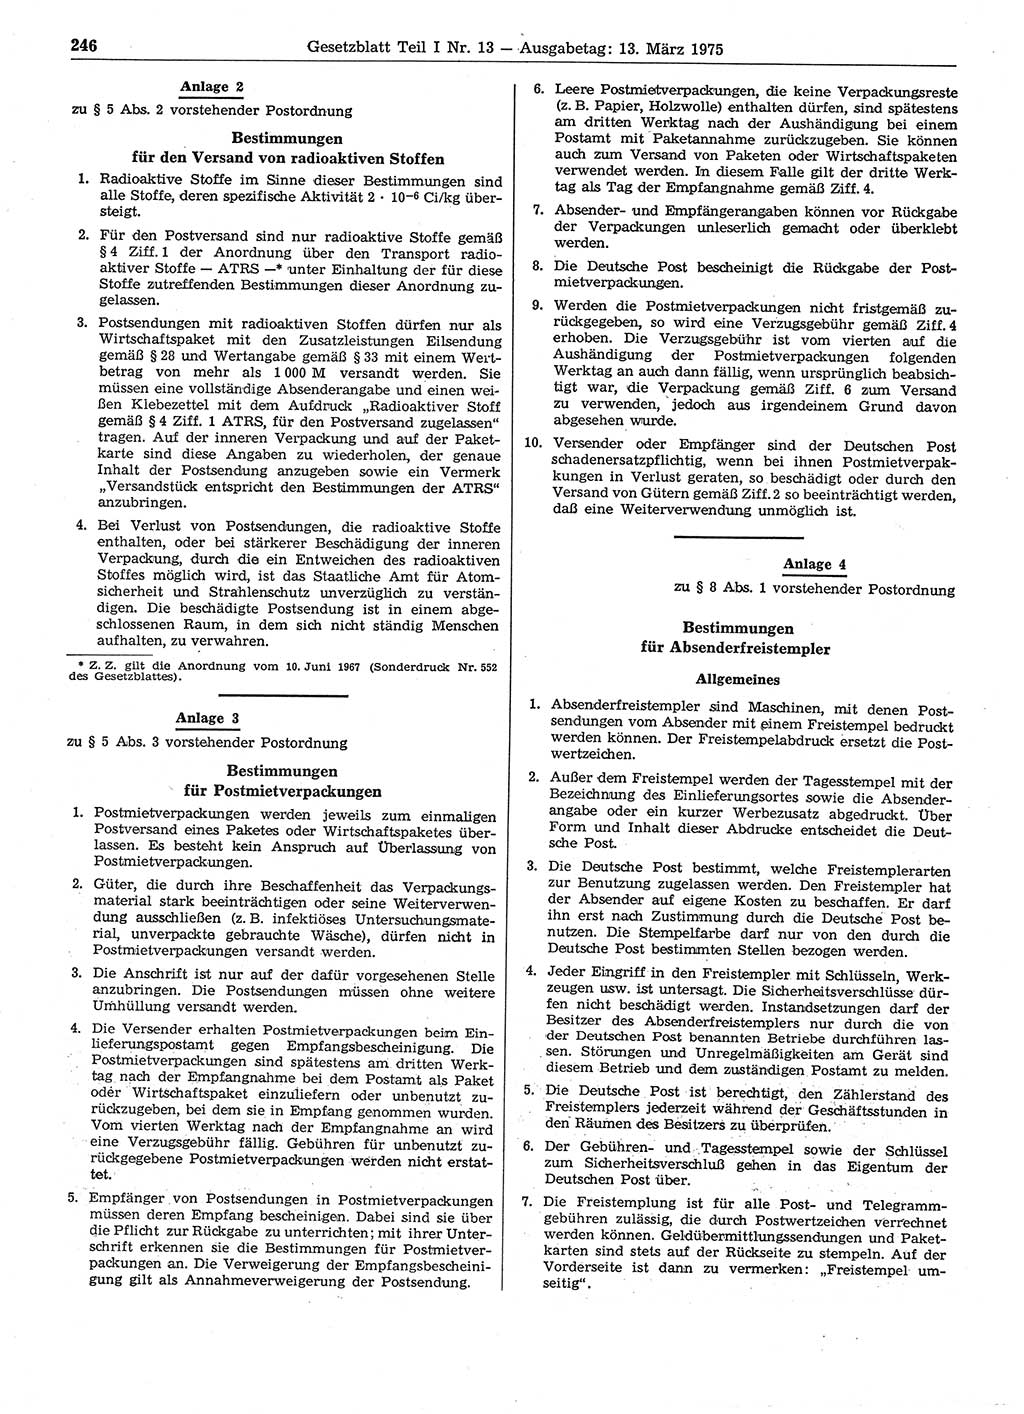 Gesetzblatt (GBl.) der Deutschen Demokratischen Republik (DDR) Teil Ⅰ 1975, Seite 246 (GBl. DDR Ⅰ 1975, S. 246)